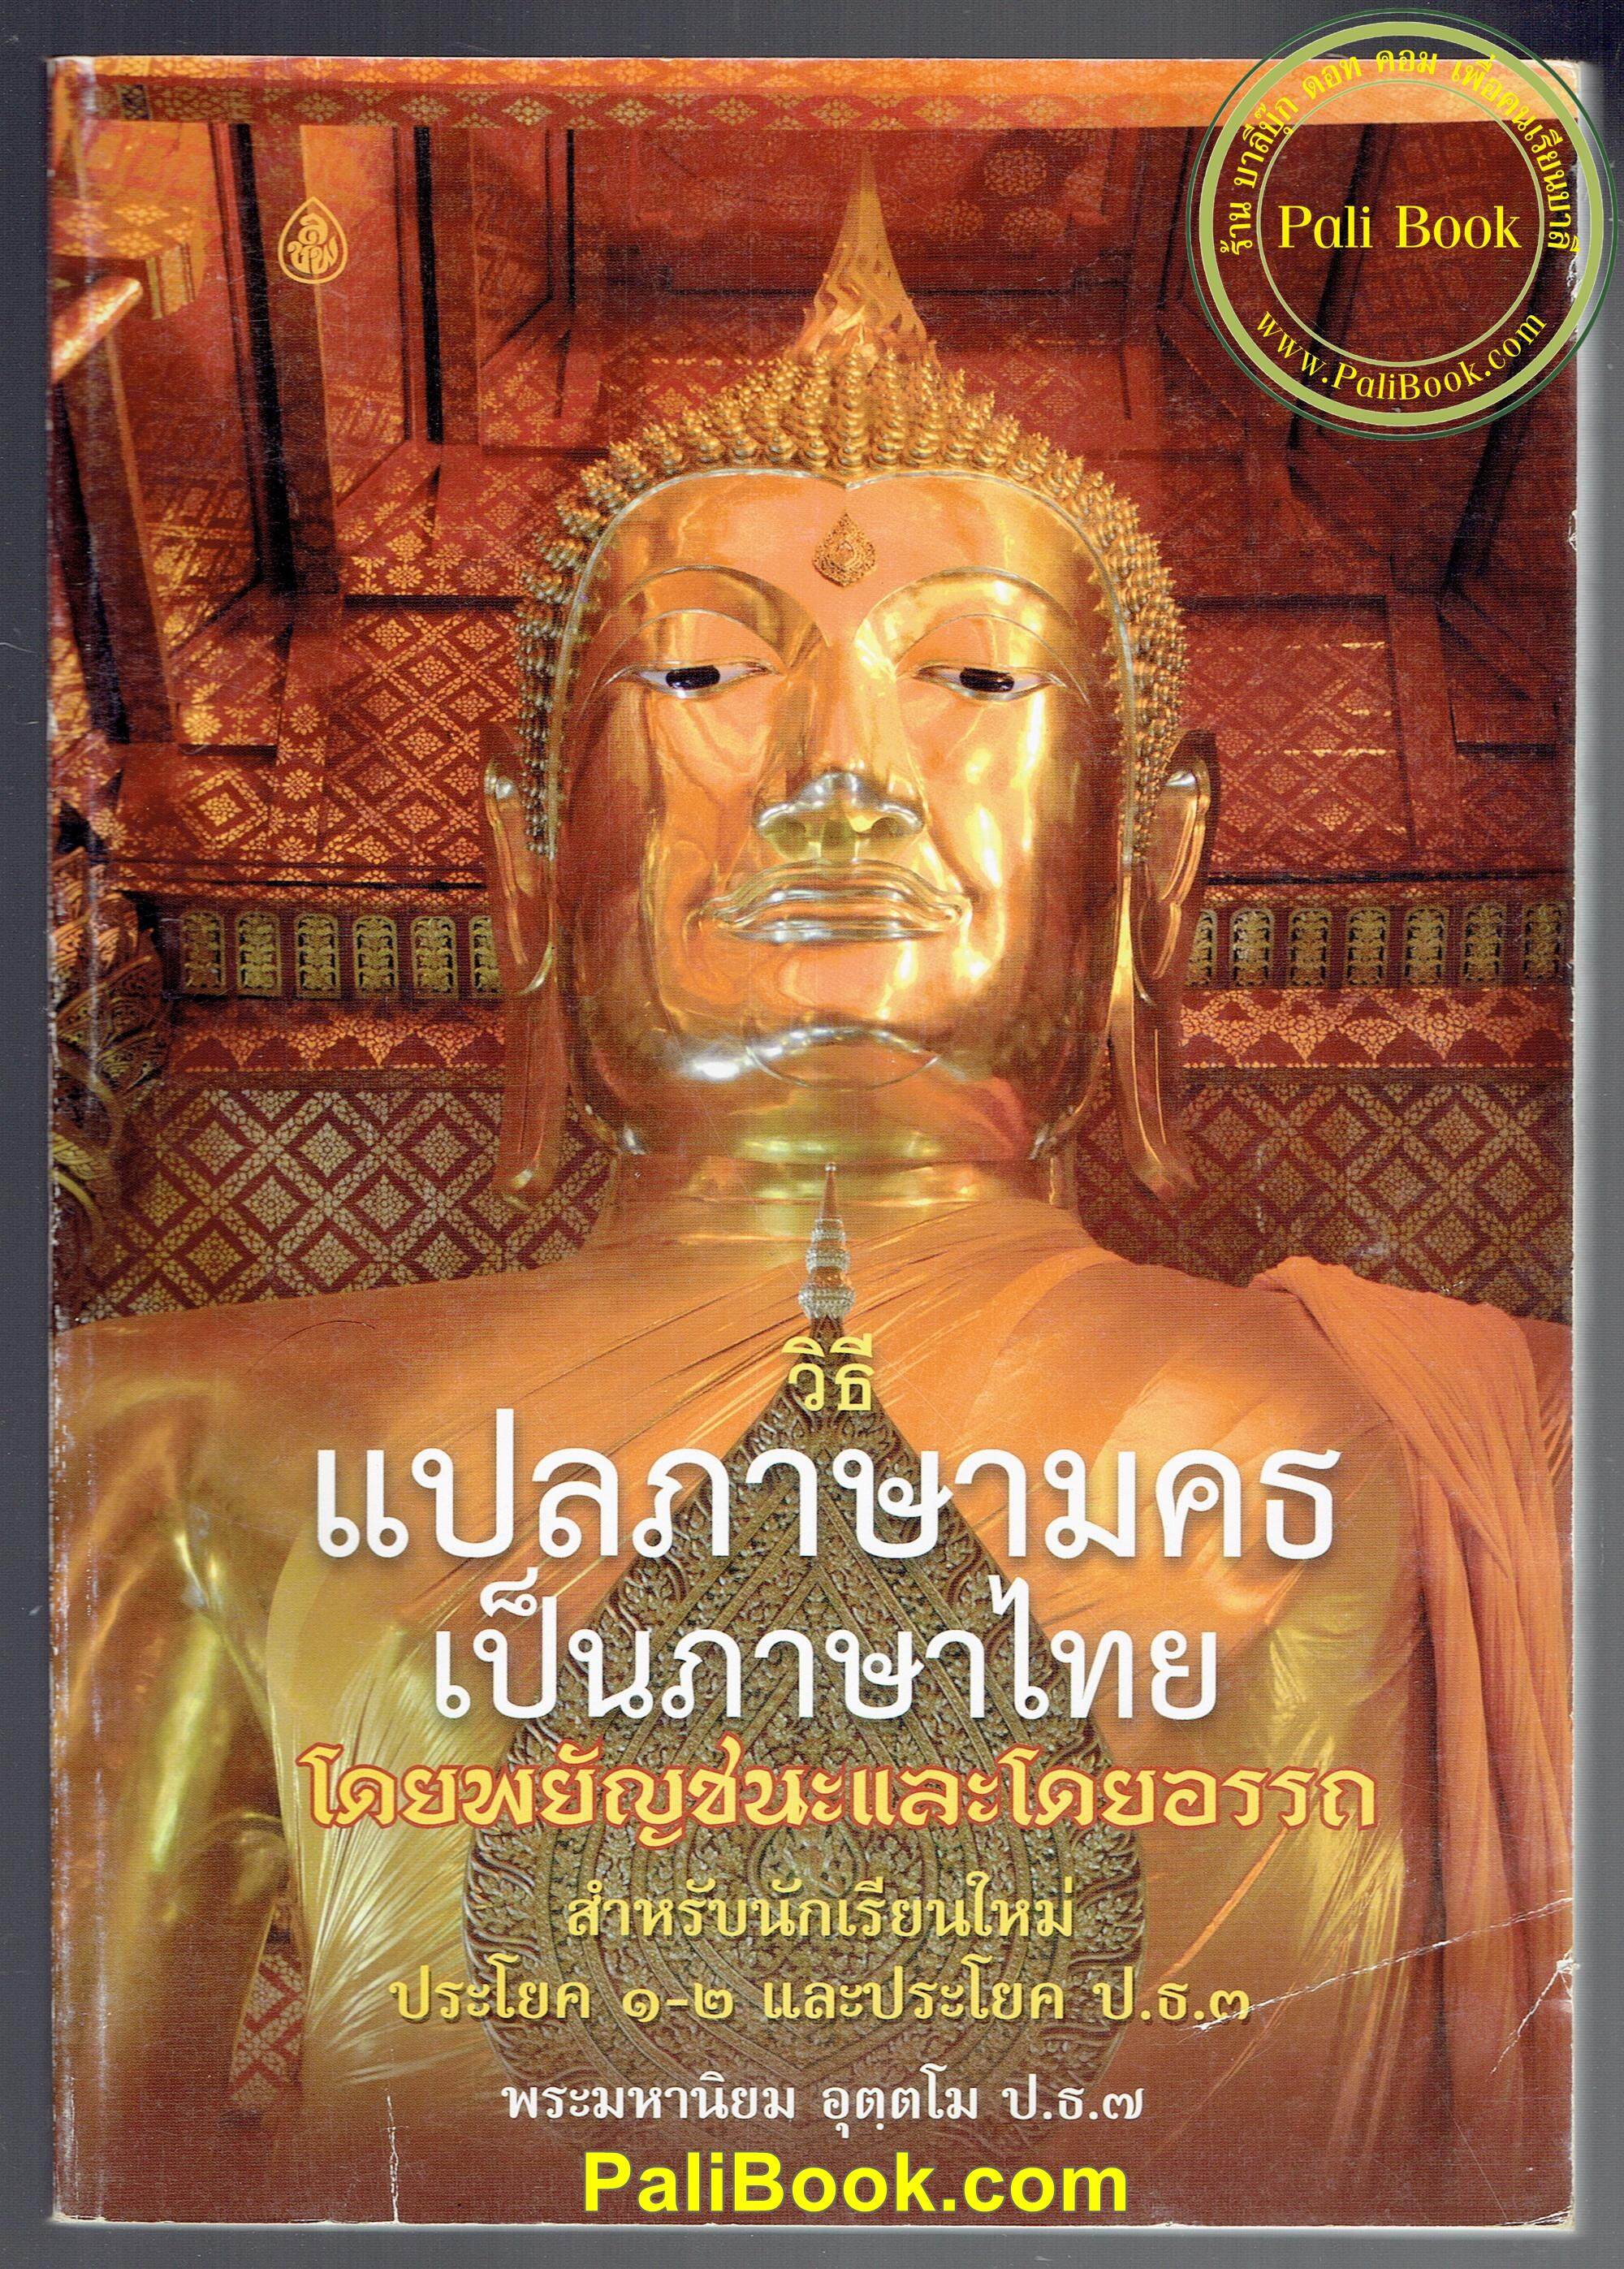 วิธีแปลภาษามคธเป็นภาษาไทย โดยพยัญชนะและโดยอรรถ สำหรับนักเรียนใหม่ ประโยค 1-2 และประโยค ป.ธ.3 (วิธีแปลบาลีเป็นไทย แปลมคธเป็นไทย) - พระมหานิยม อุตฺตโม - หนังสือบาลี ร้านบาลีบุ๊ก Palibook